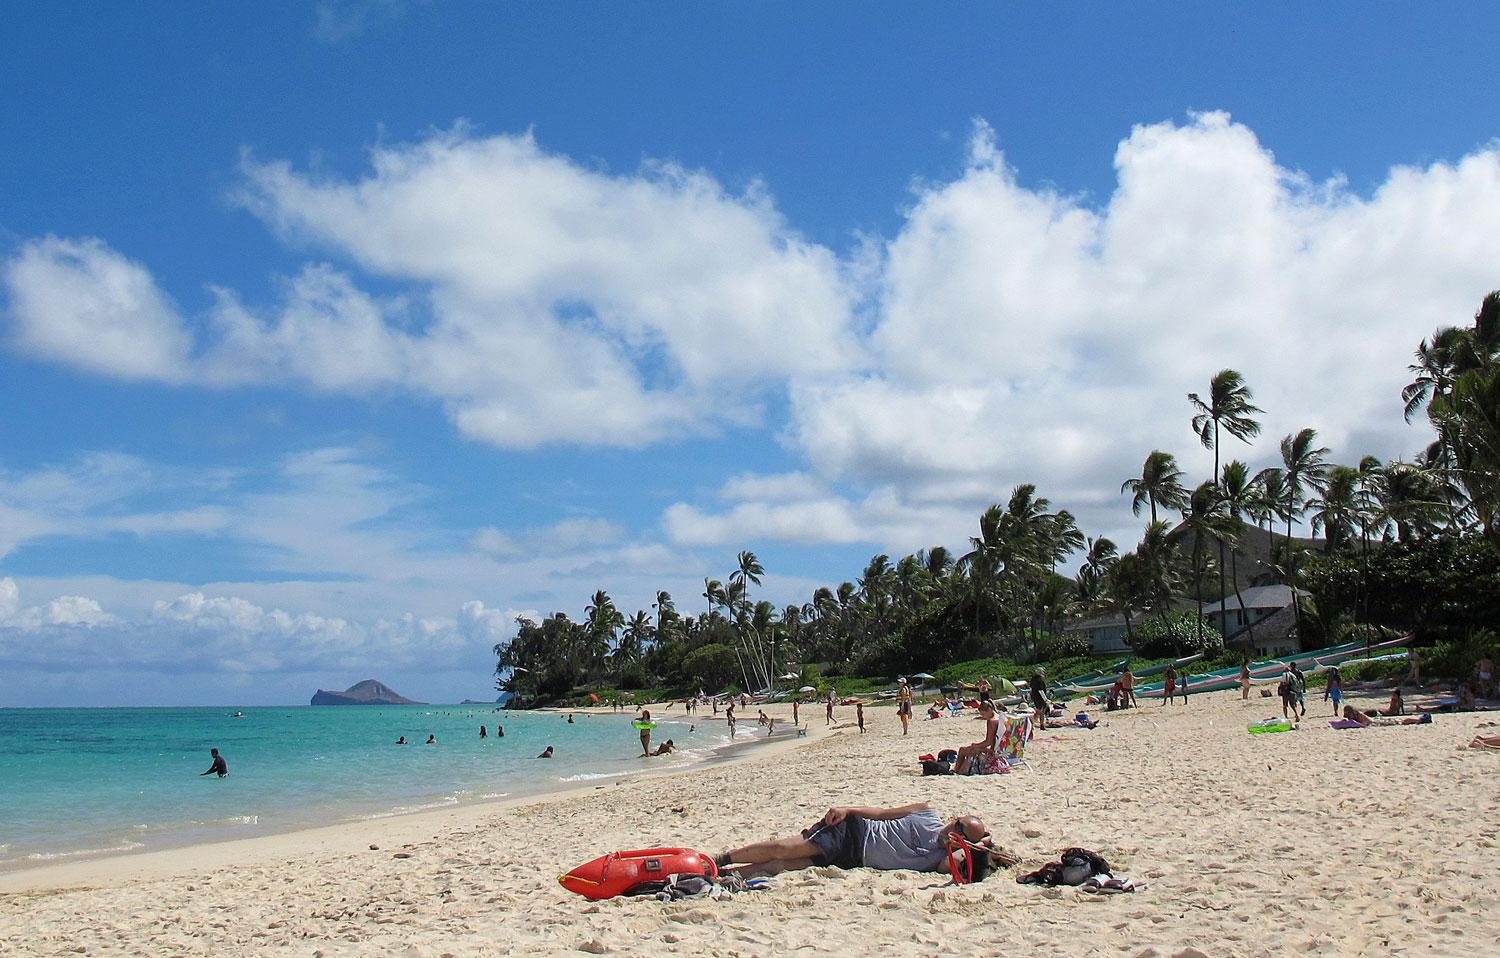 Kailua bjuder fortfarande på skönt strandliv, trots problem med att stränderna eroderar bort.